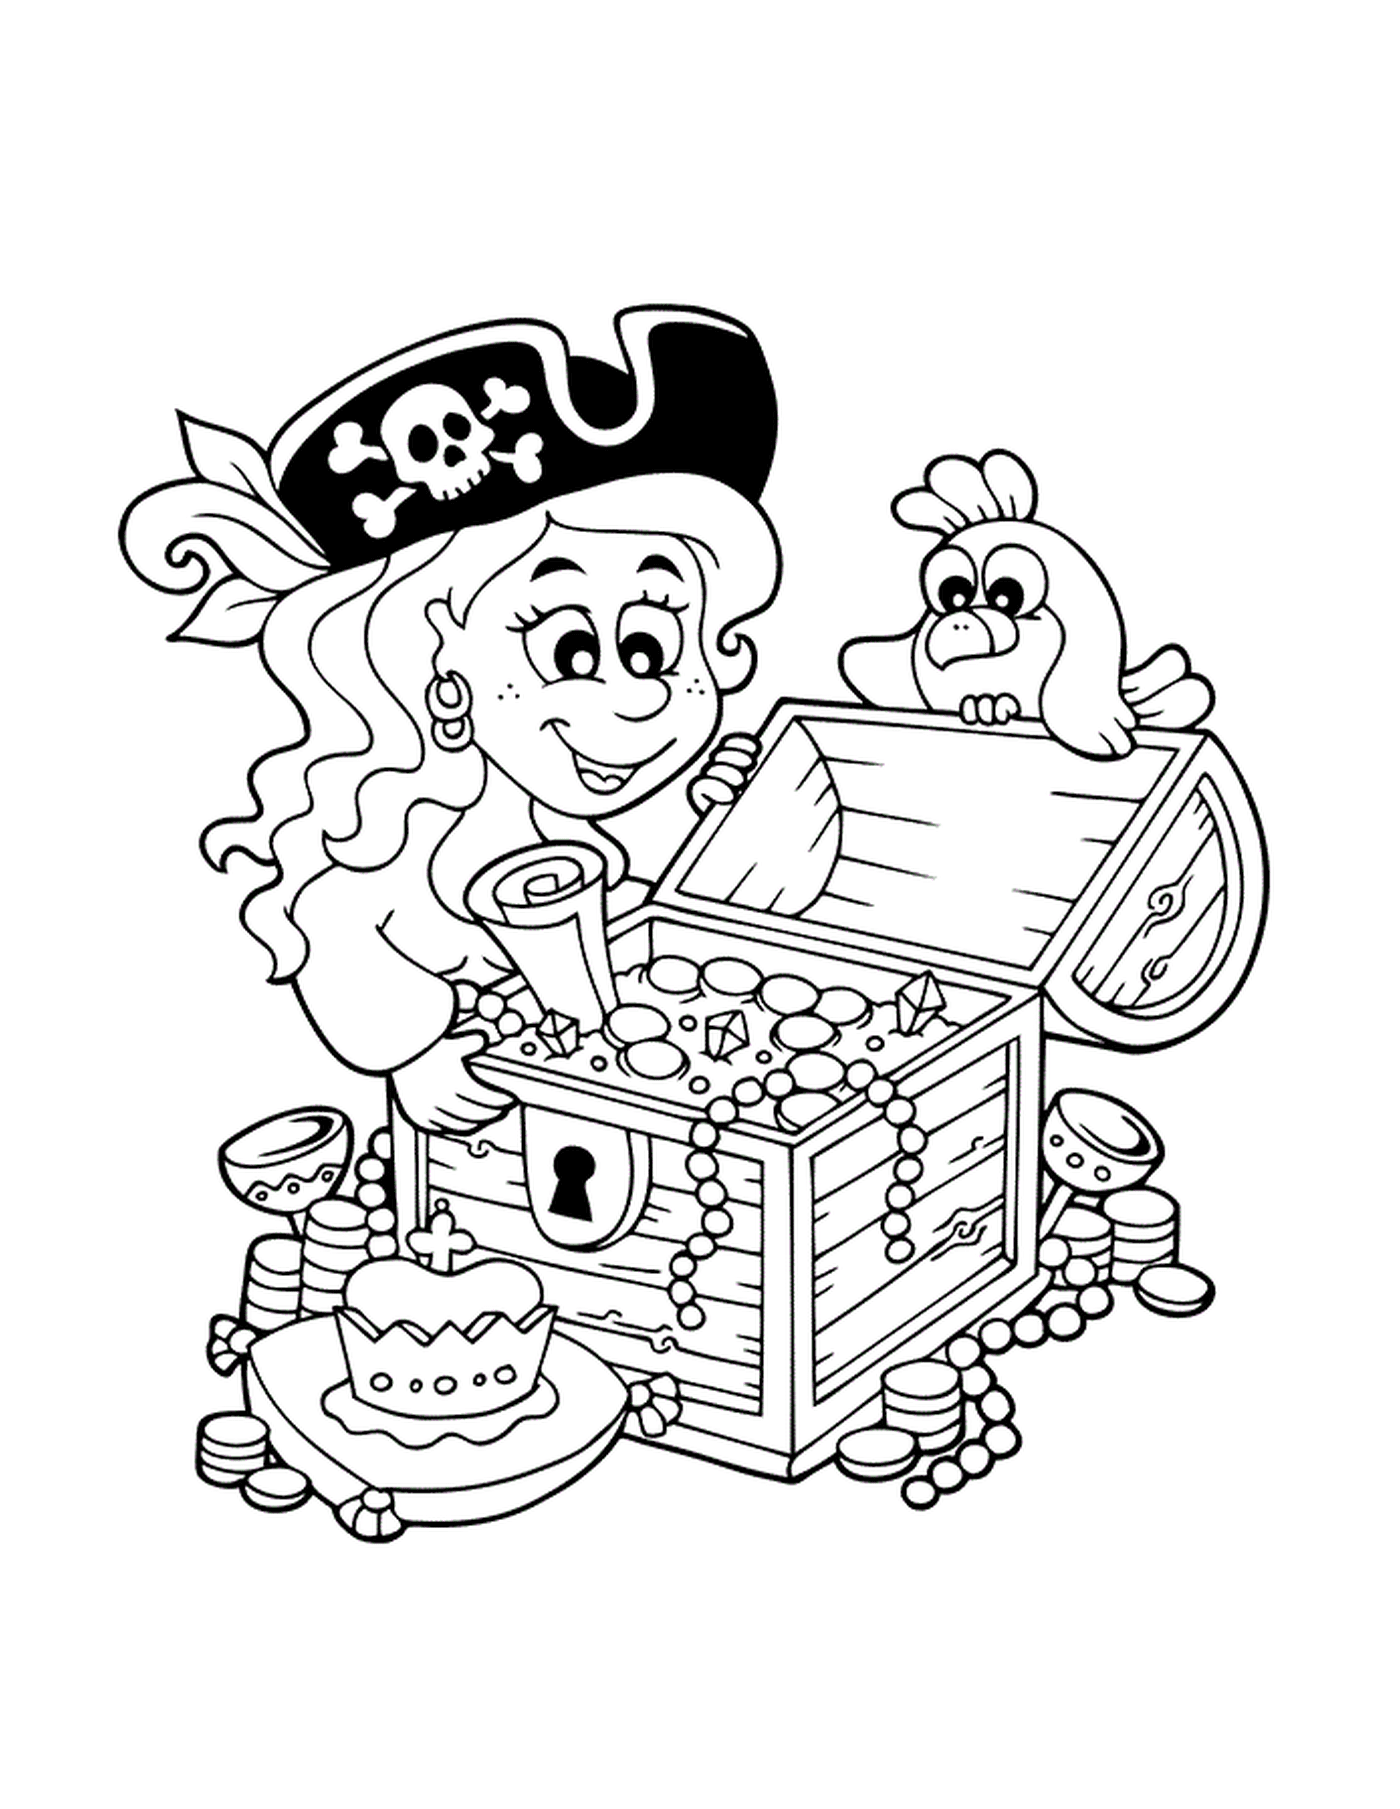  Пиратская девчонка обнаруживает сокровища 